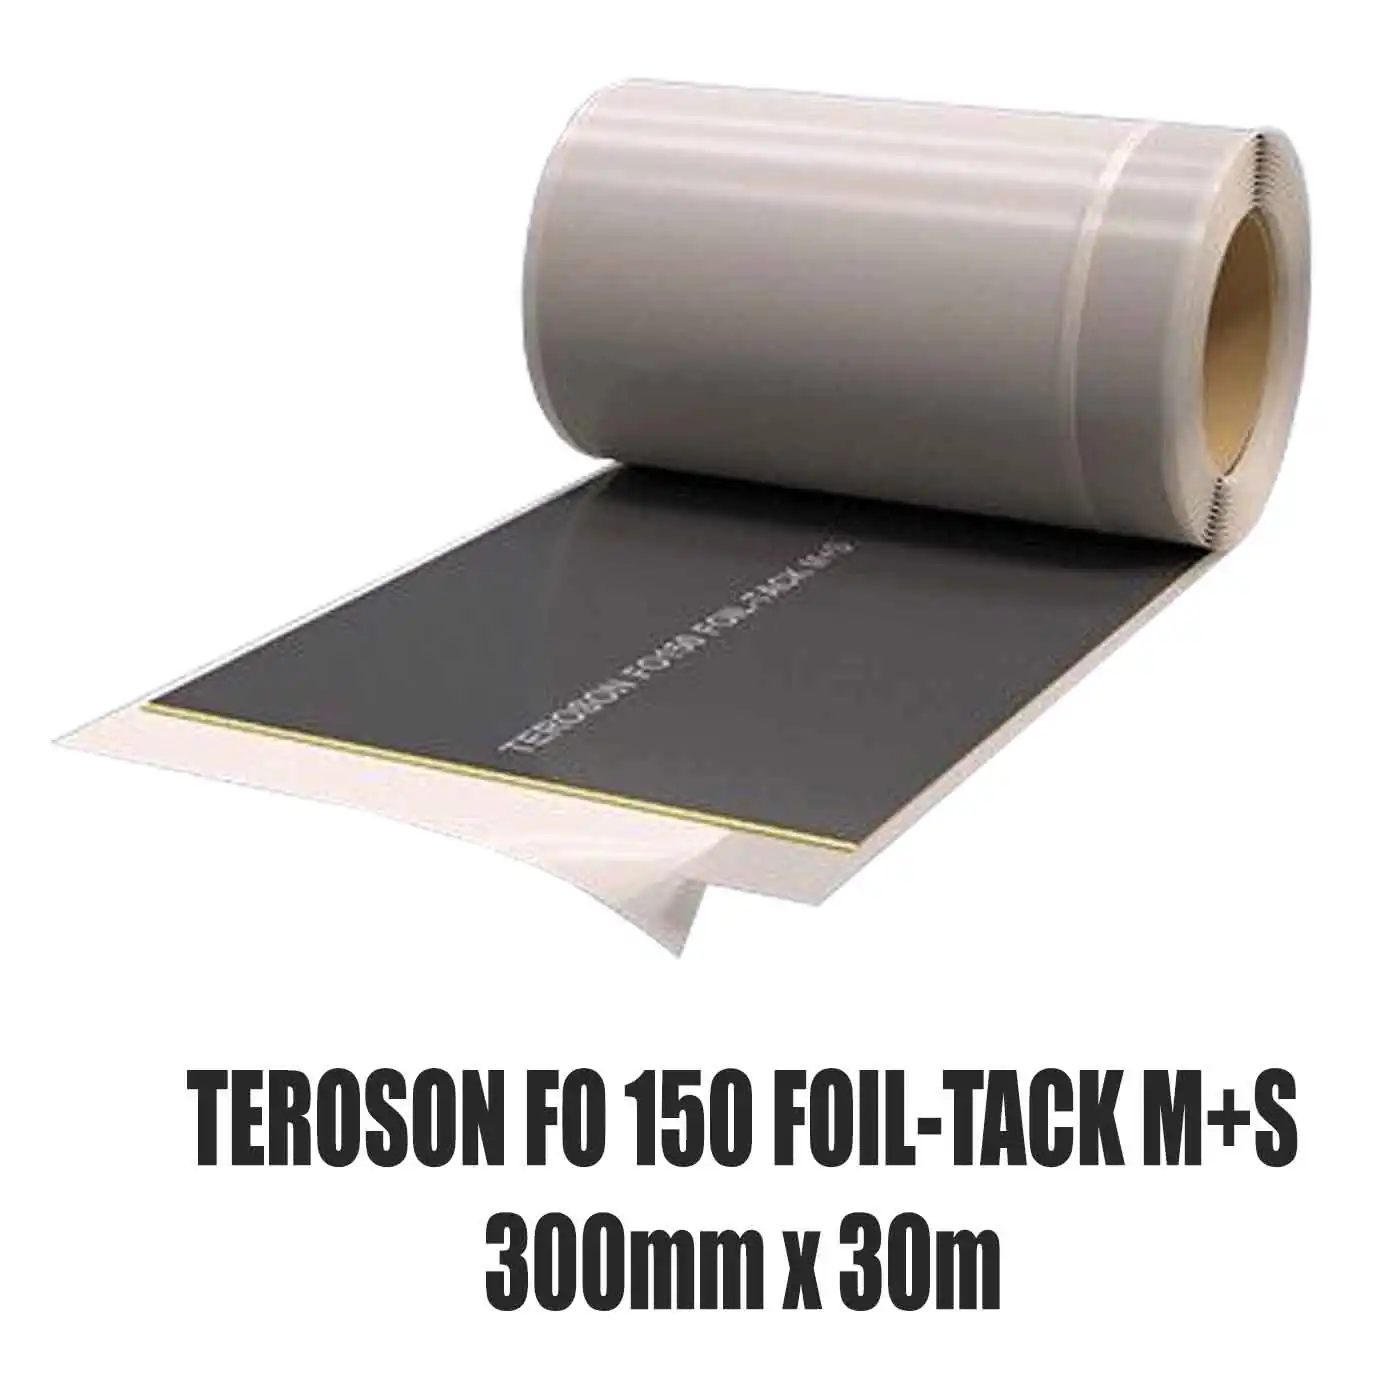 Dichtfolie TEROSON FO 150 FOIL-TACK M+S 300 mm x 30 m